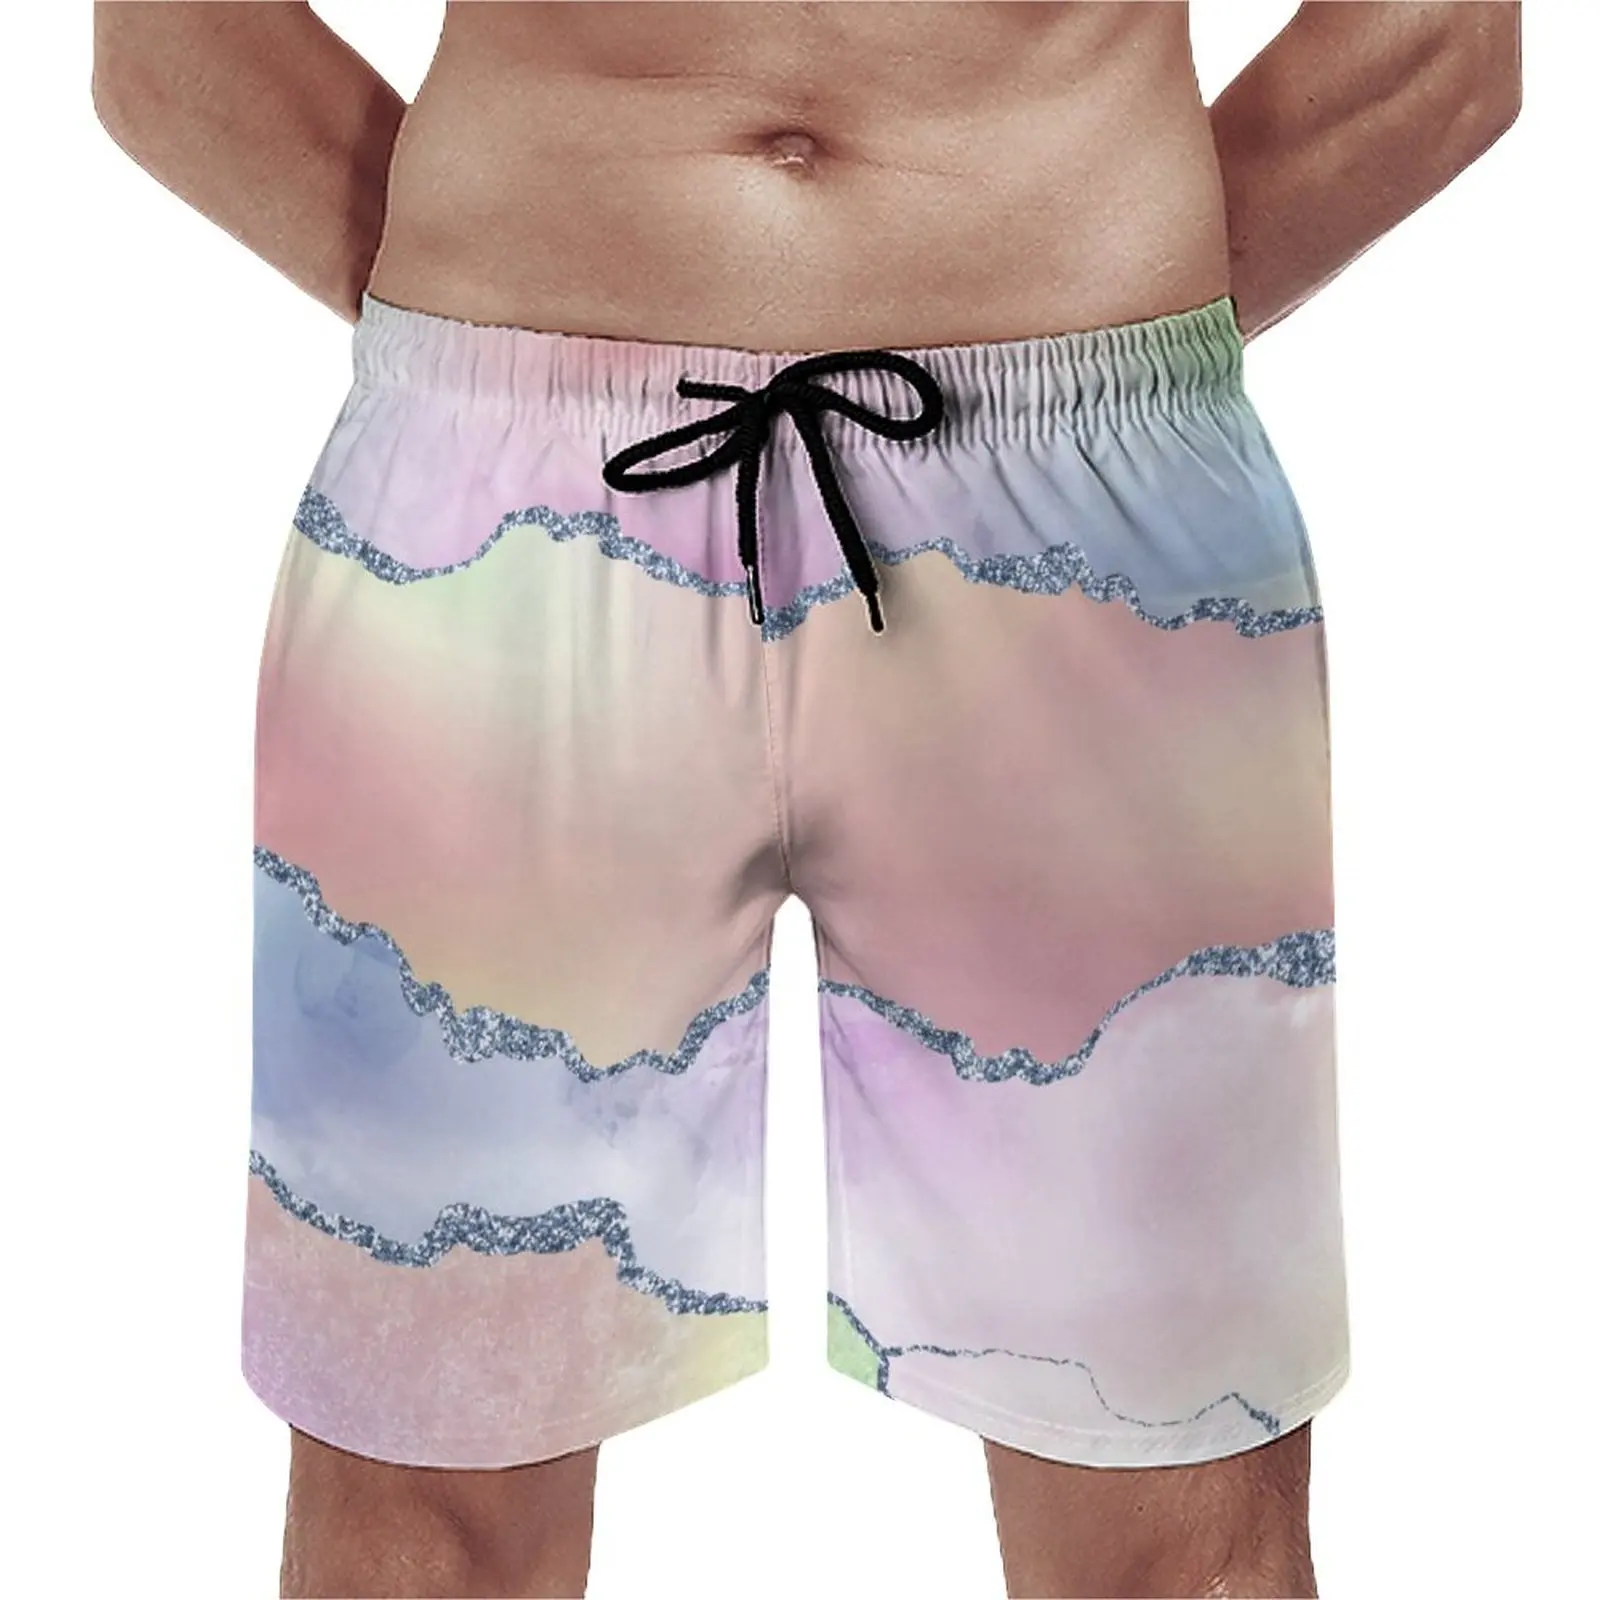 

Шорты пляжные акварельные с эффектом омбре, Короткие штаны для серфинга, персиковый Агат, быстросохнущие купальные трусы для гавайской доски, большие размеры, на лето